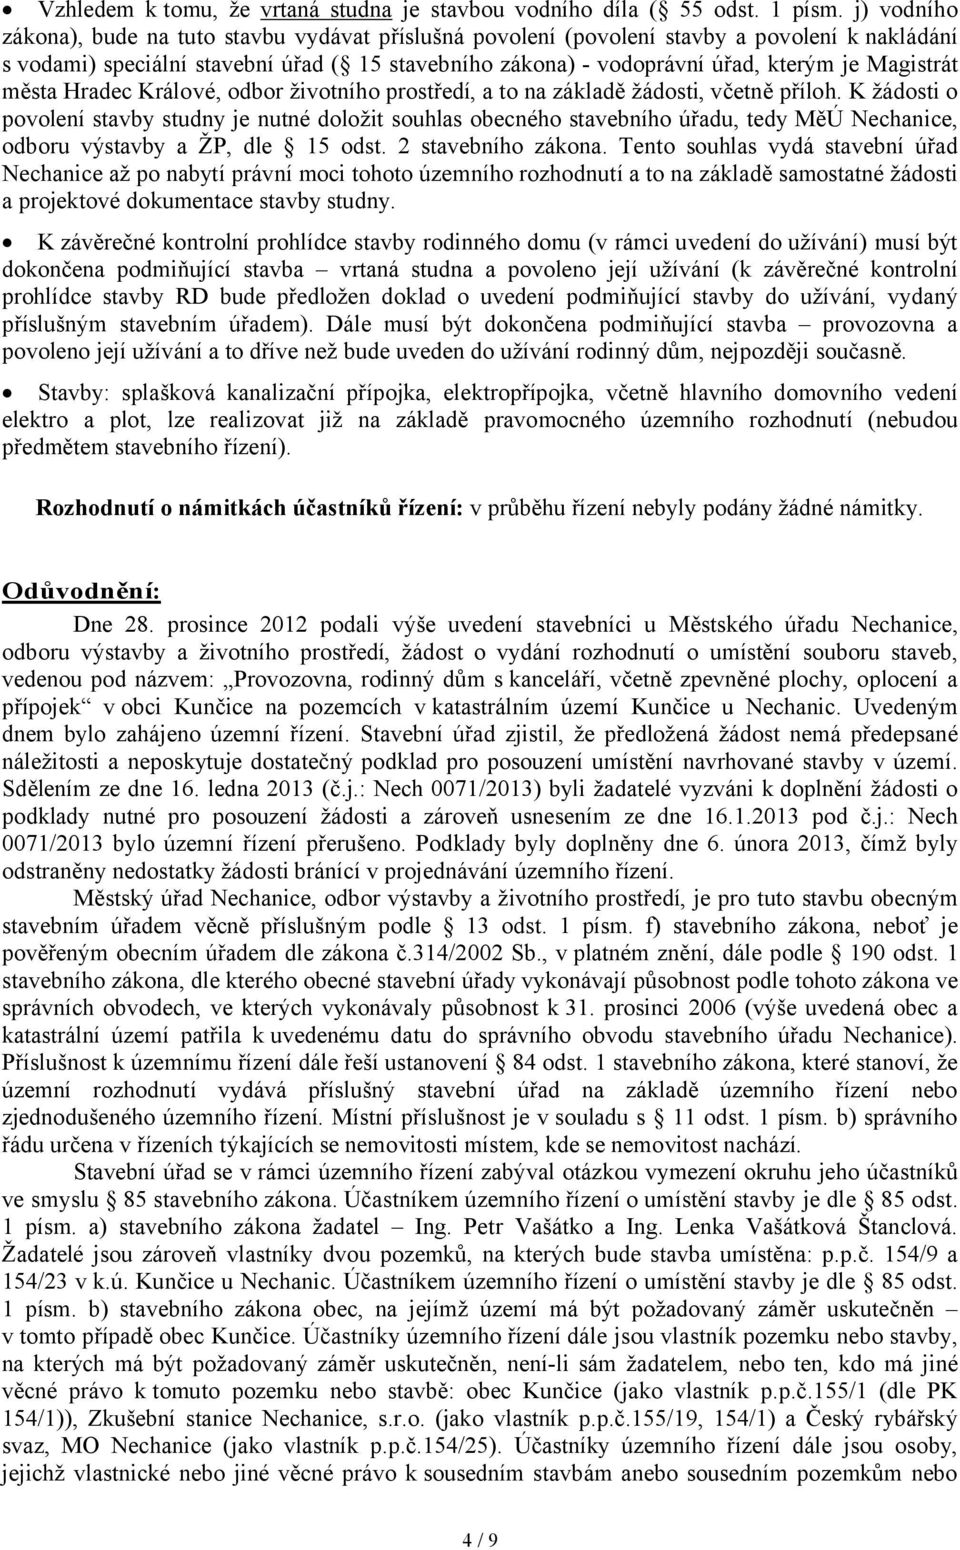 Magistrát města Hradec Králové, odbor životního prostředí, a to na základě žádosti, včetně příloh.